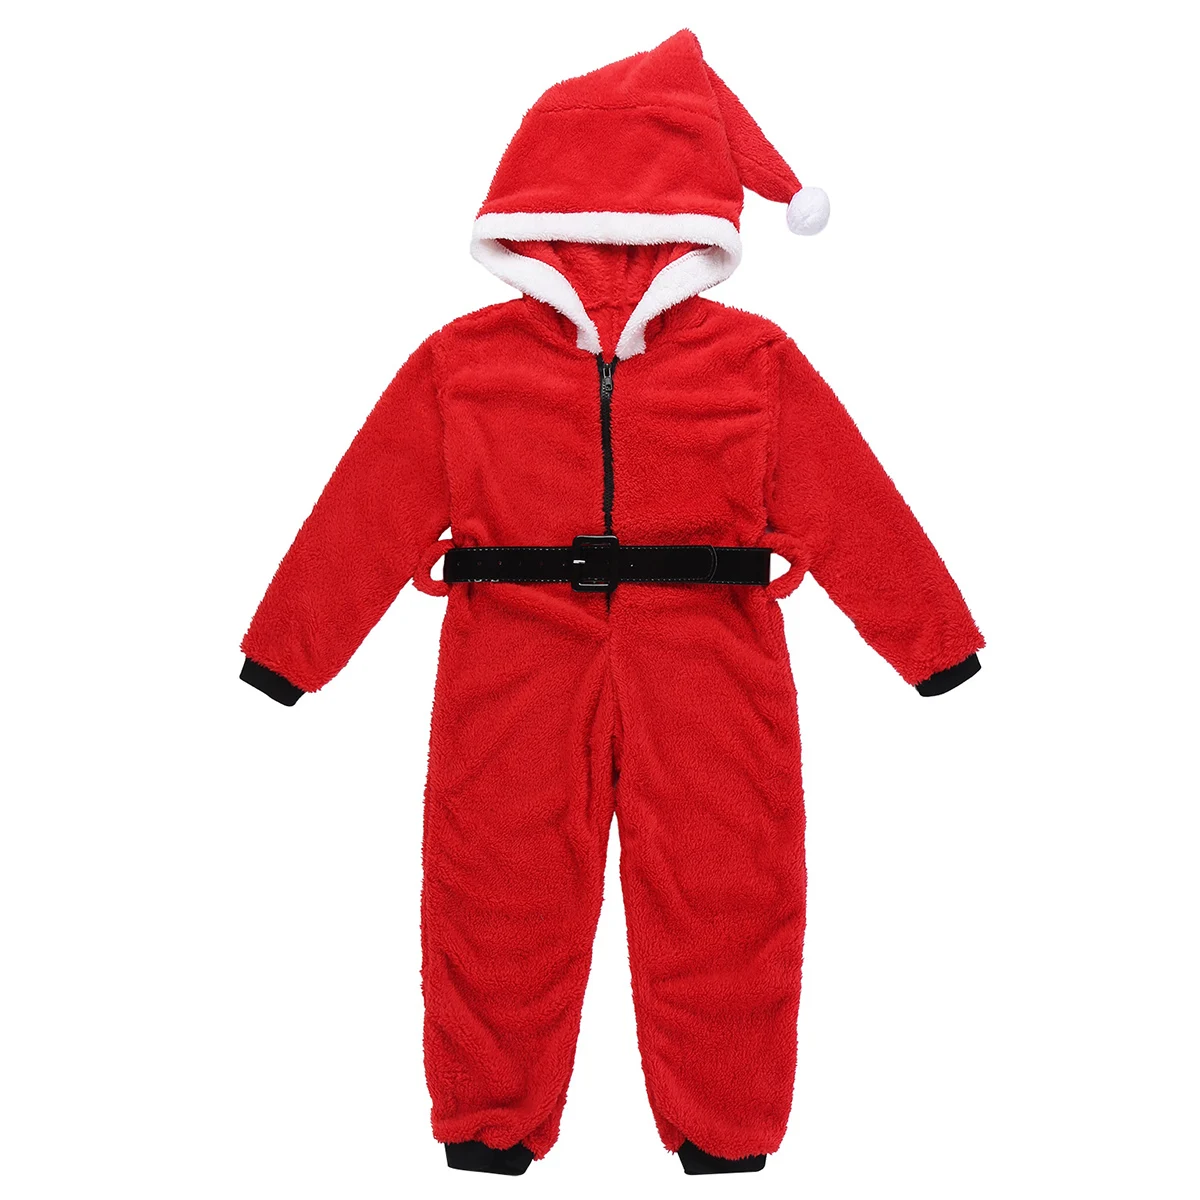 Детский костюм Санты для девочек; Рождественский костюм для костюмированной вечеринки из мягкого флиса кораллового цвета; комбинезон с капюшоном; пижамы с поясом; вечерние костюмы для рождественских праздников